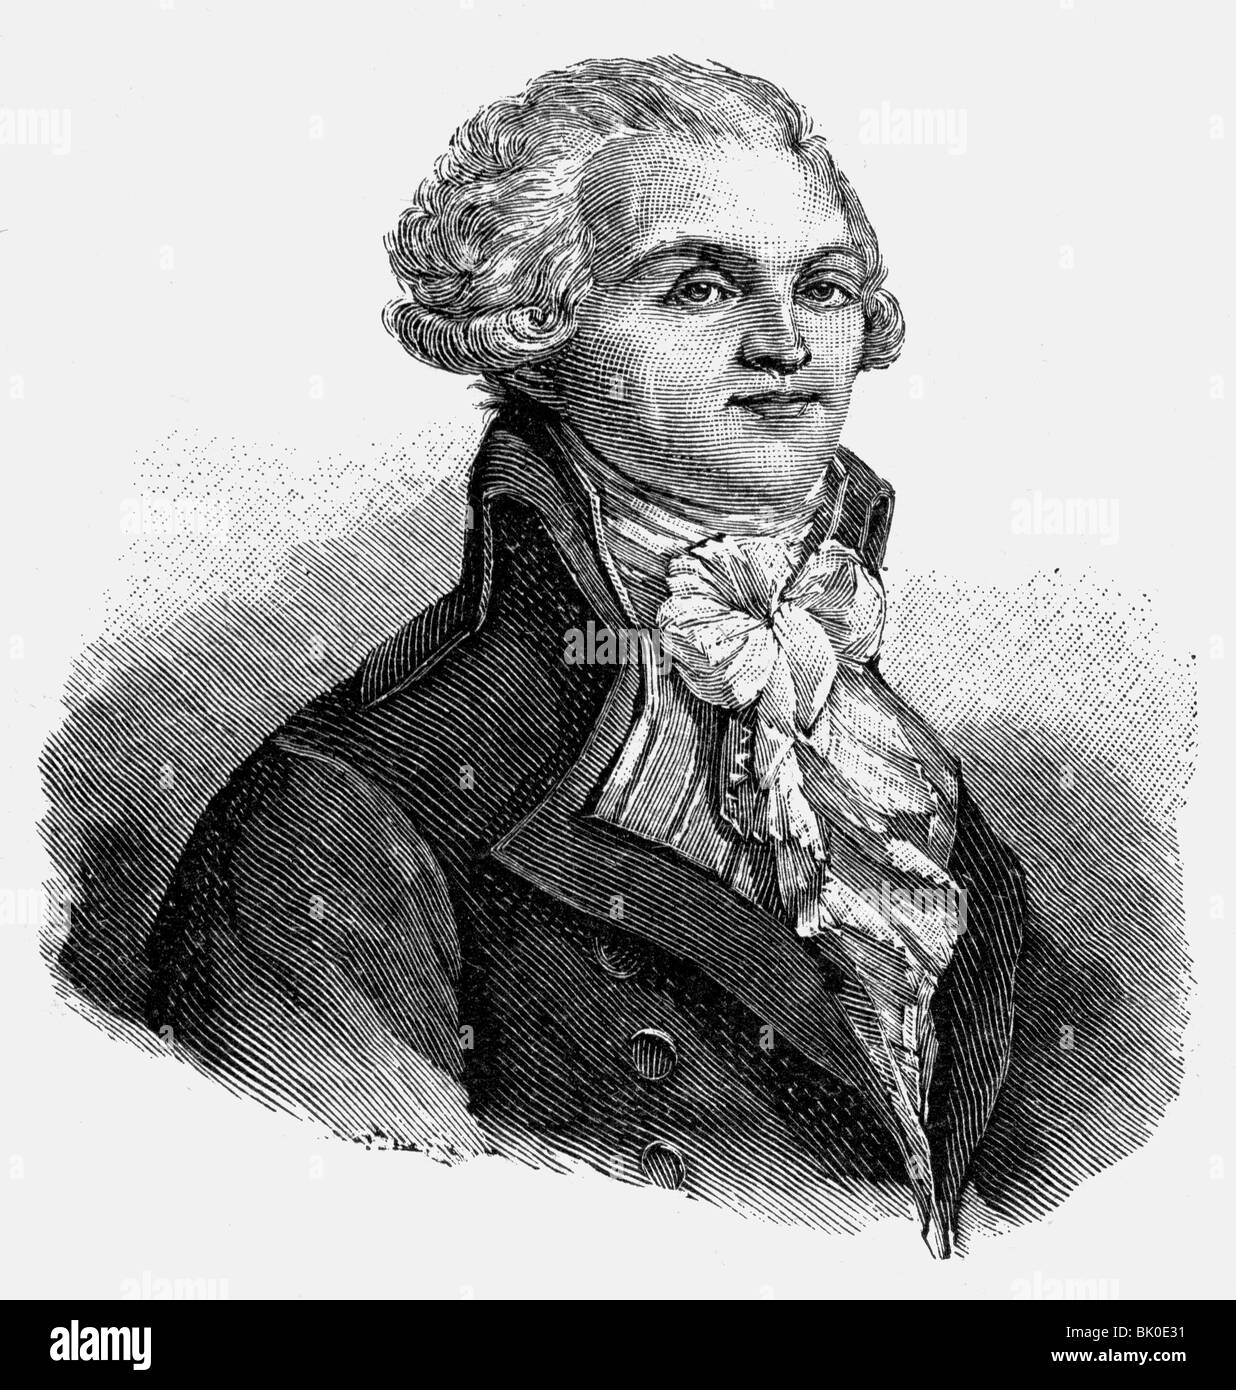 Robespierre, Maximilian de, 6.5.1758 - 28.7.1704, französischer Politiker, Mitglied des Ausschusses für öffentliche Sicherheit 27.7.177 - 27.7.1704, Porträt, Holzgravur, 19. Jahrhundert, Stockfoto